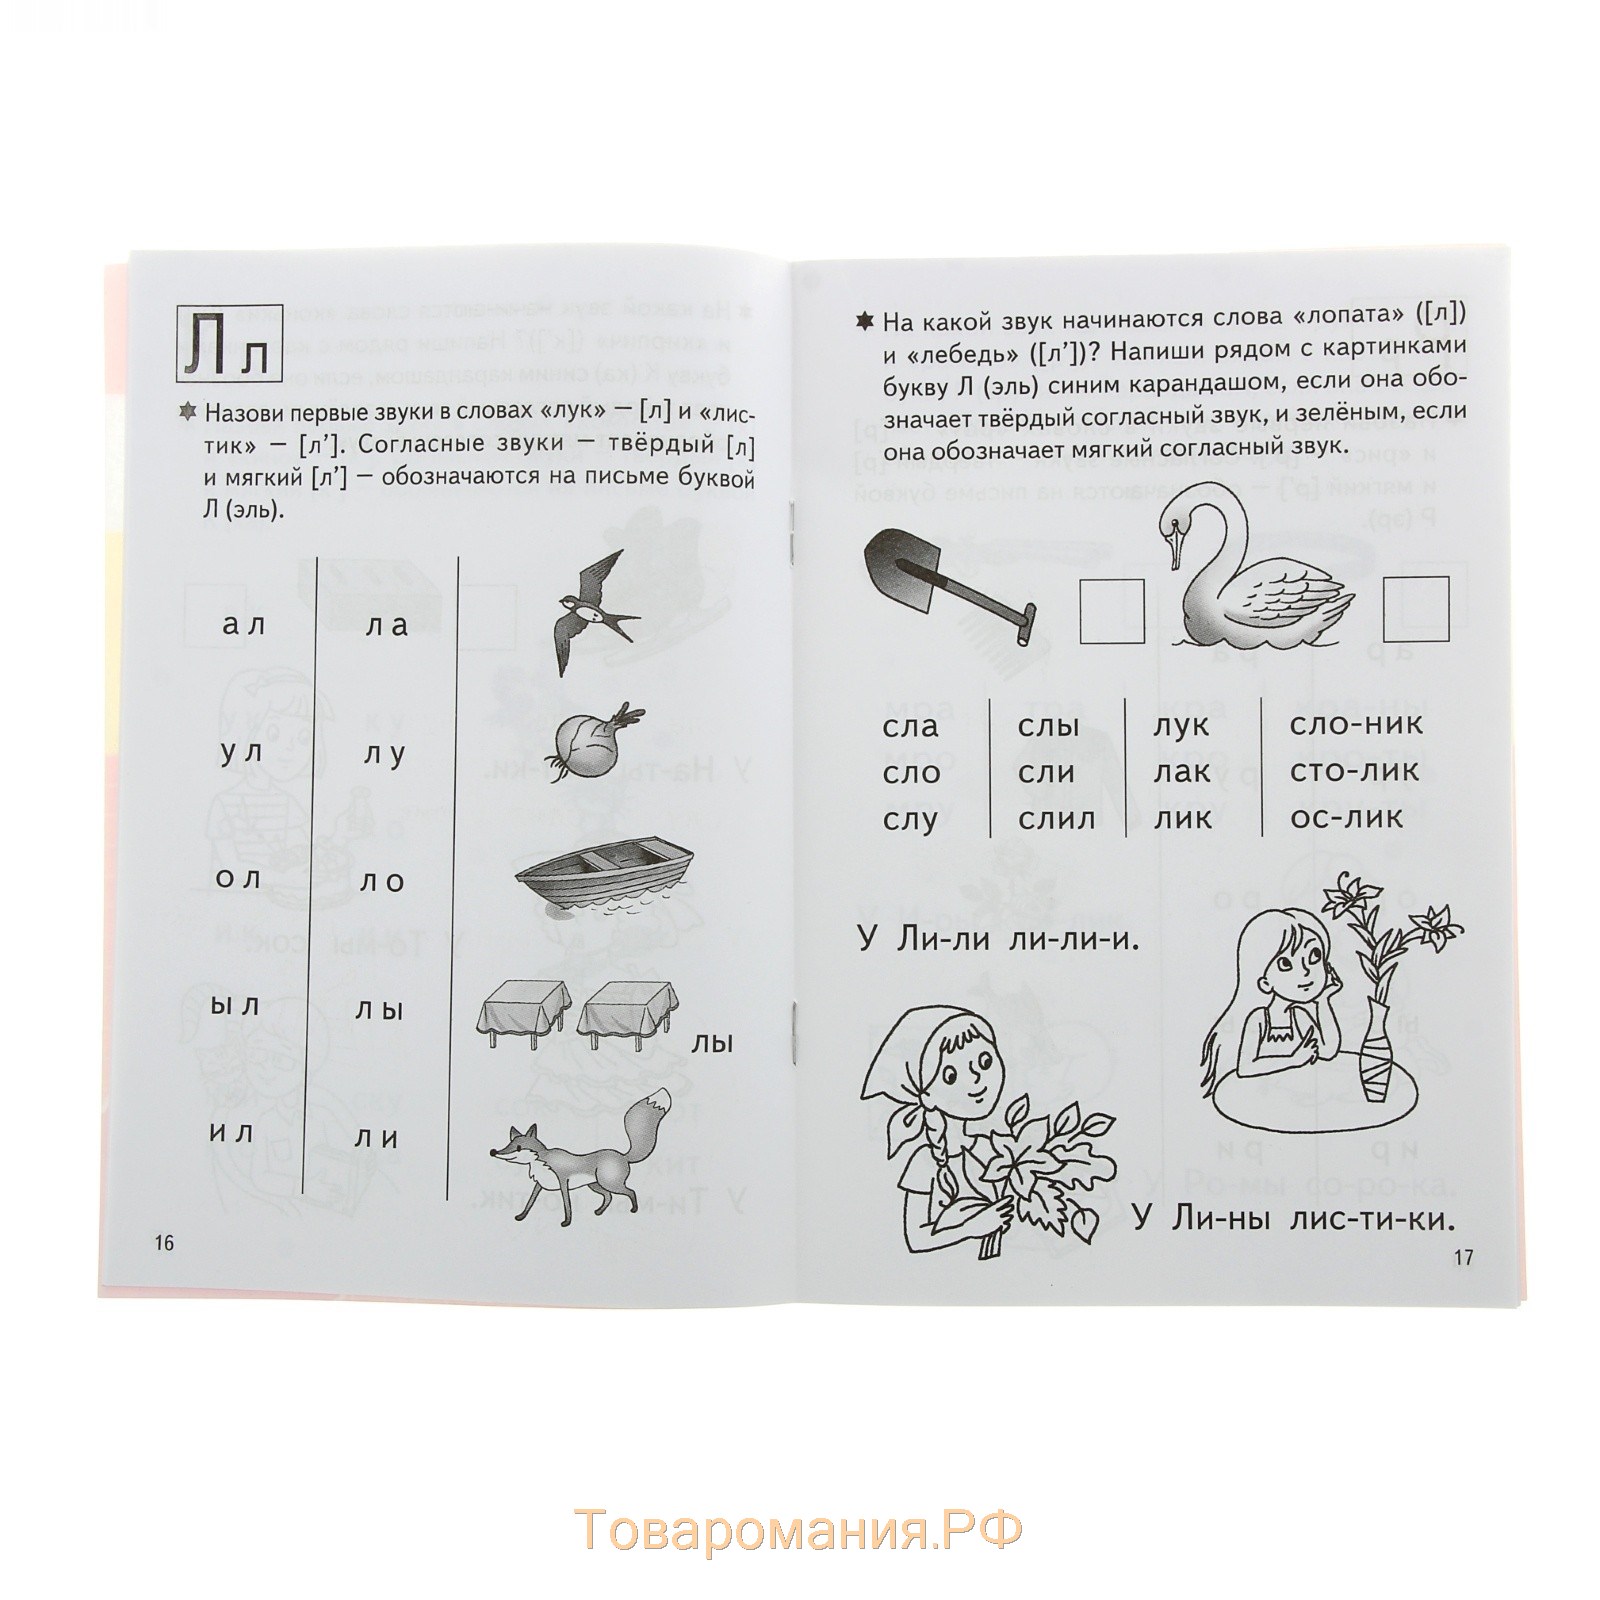 Рабочая тетрадь для детей 4-6 лет «Учимся читать», часть 1, Бортникова Е.